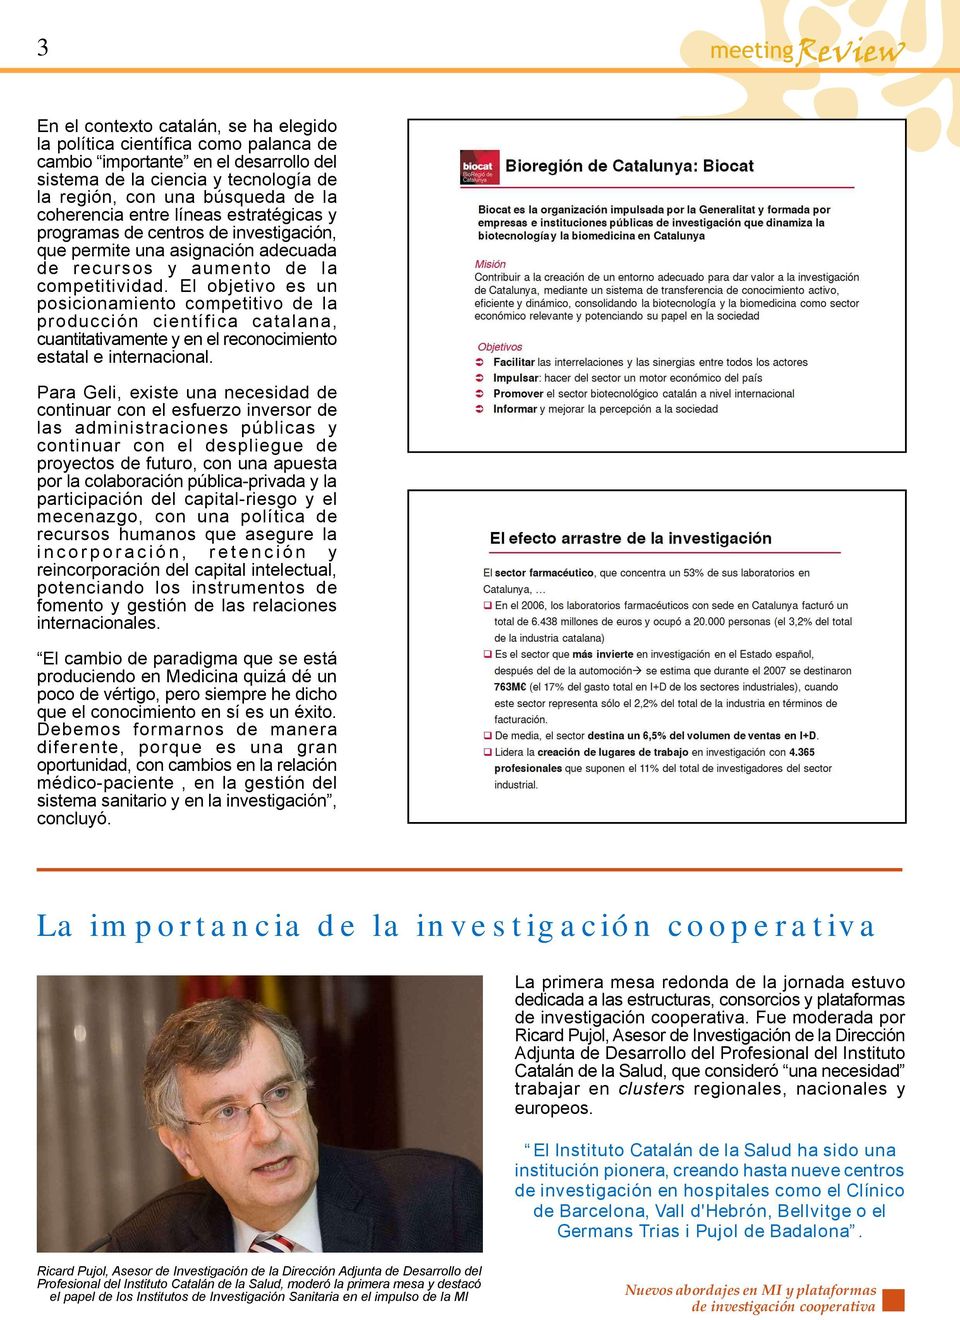 El objetivo es un posicionamiento competitivo de la producción científica catalana, cuantitativamente y en el reconocimiento estatal e internacional.